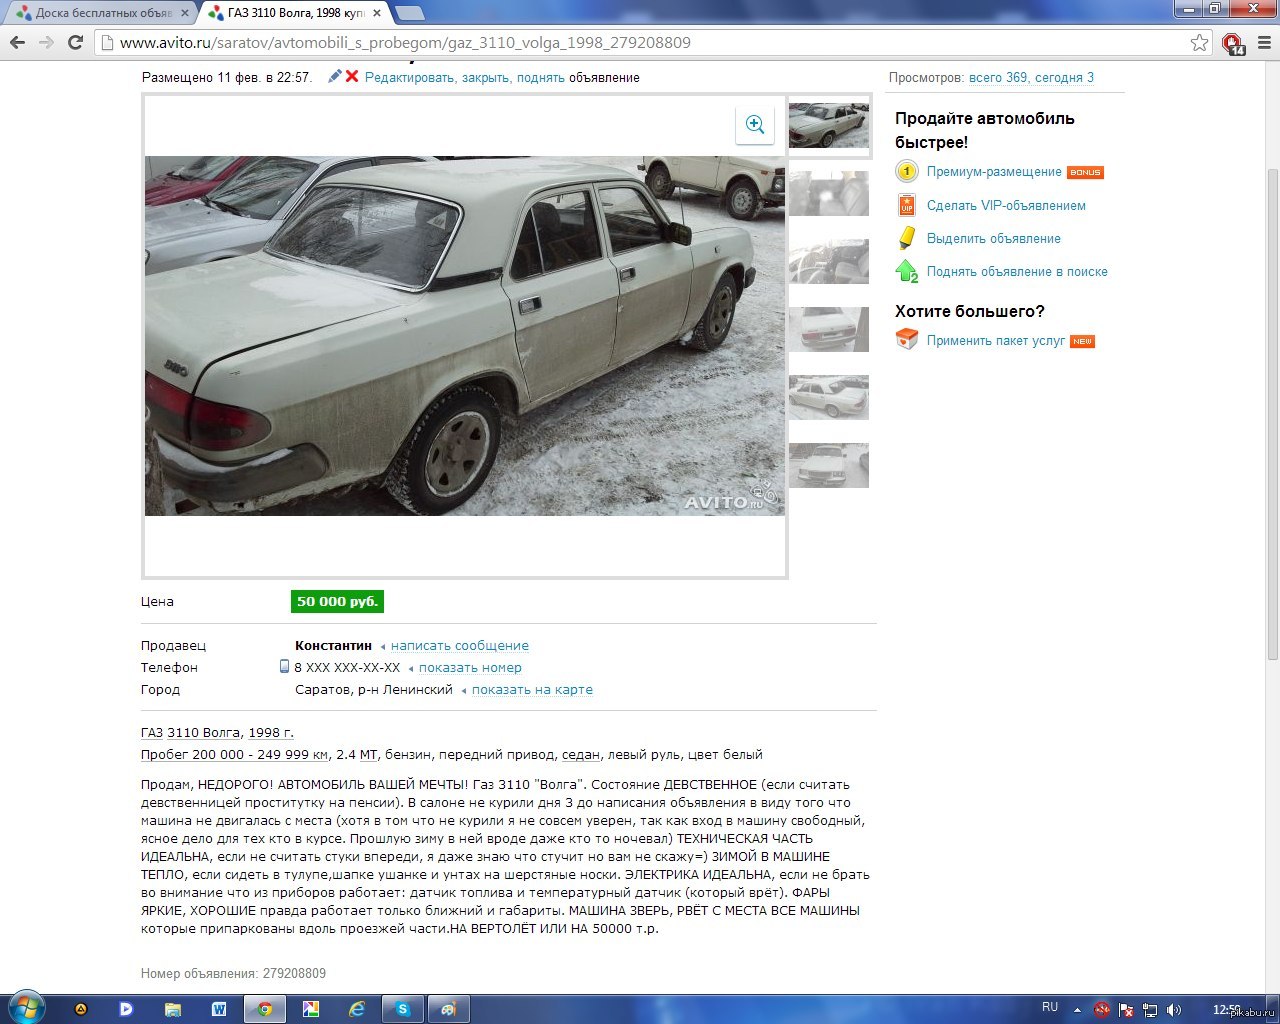 Смешное объявление о продаже машины Волга